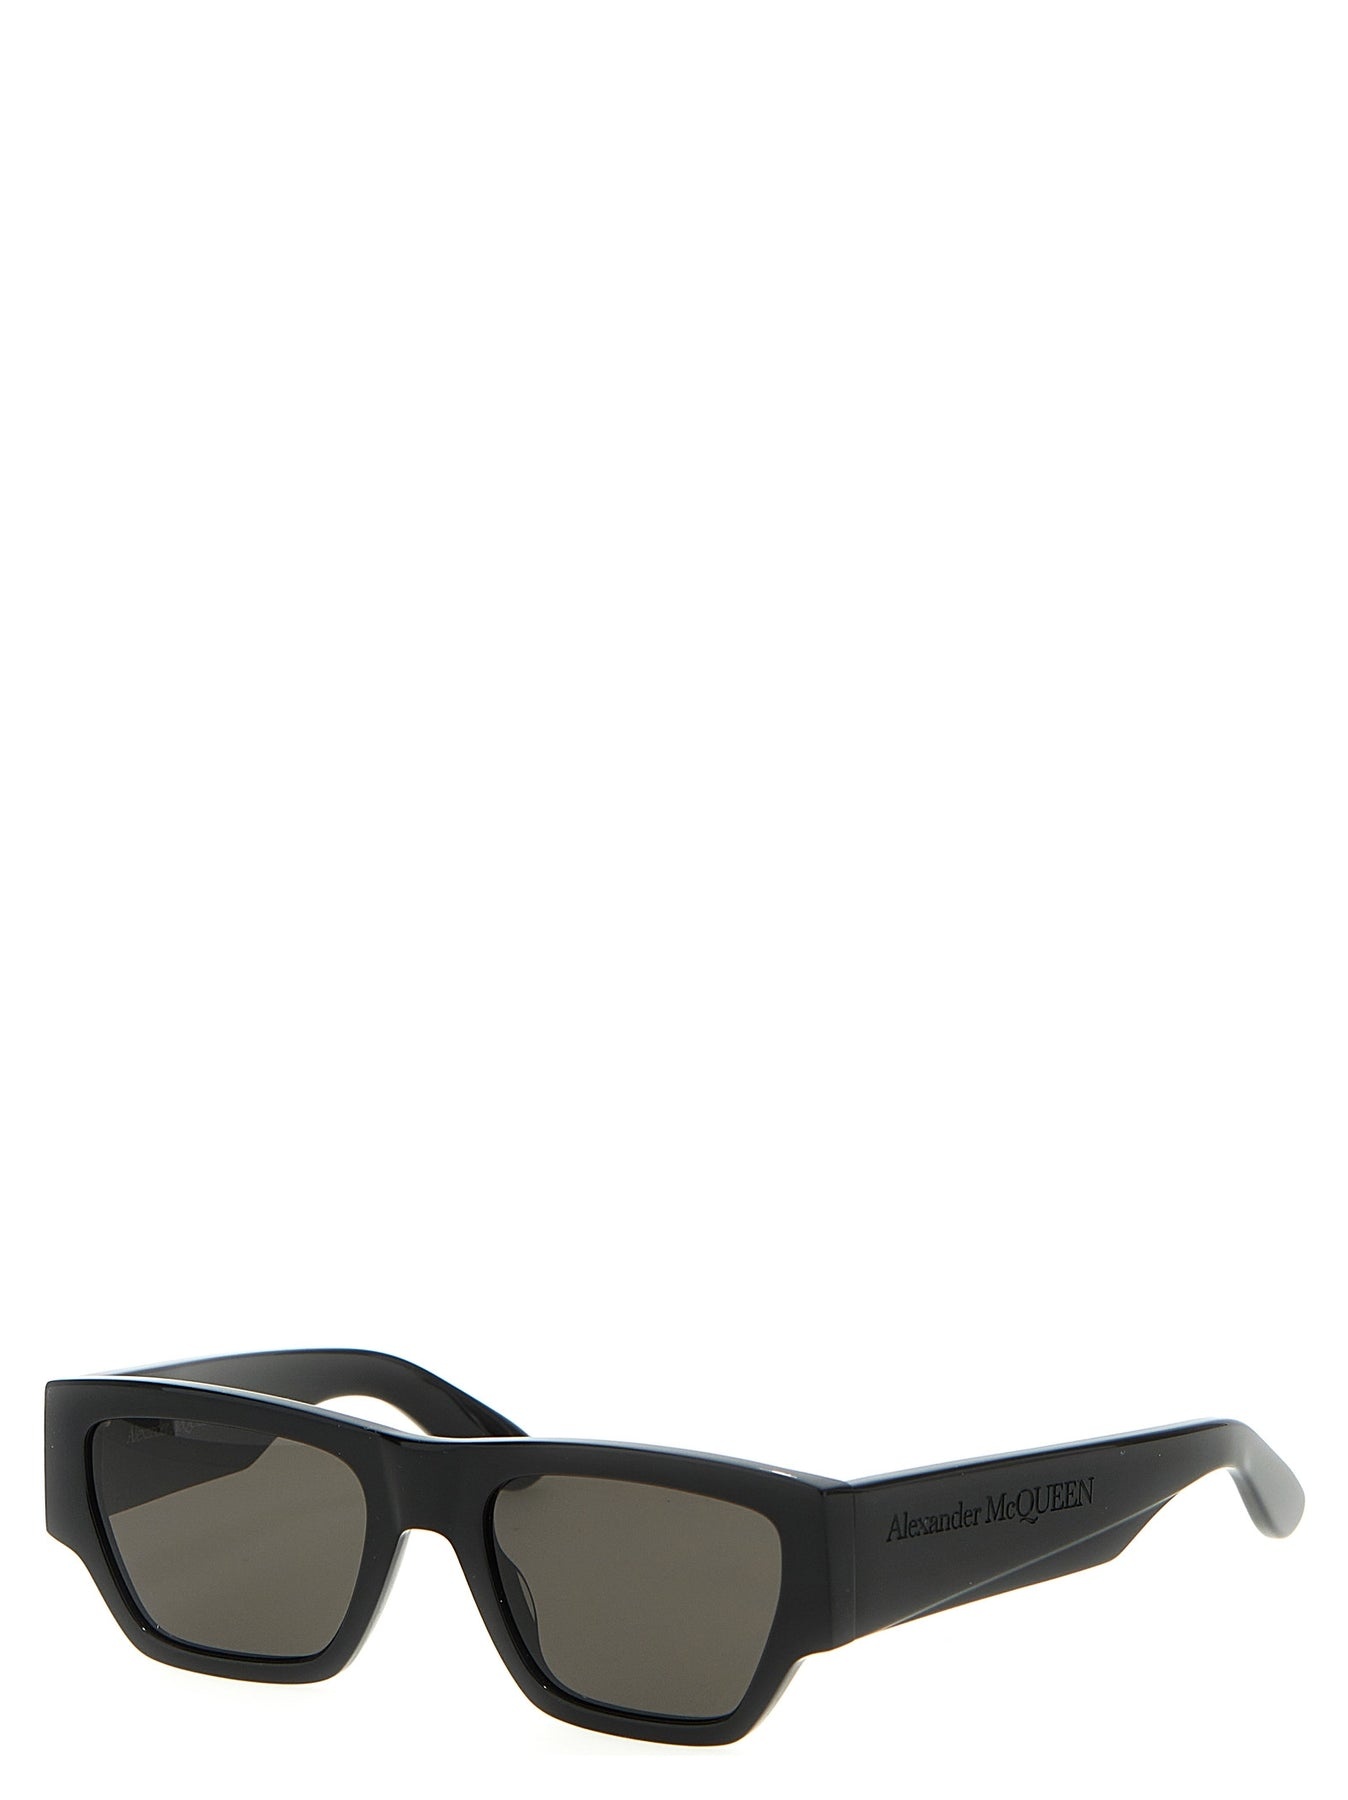 Mcqueen Angled Sunglasses Black - 3